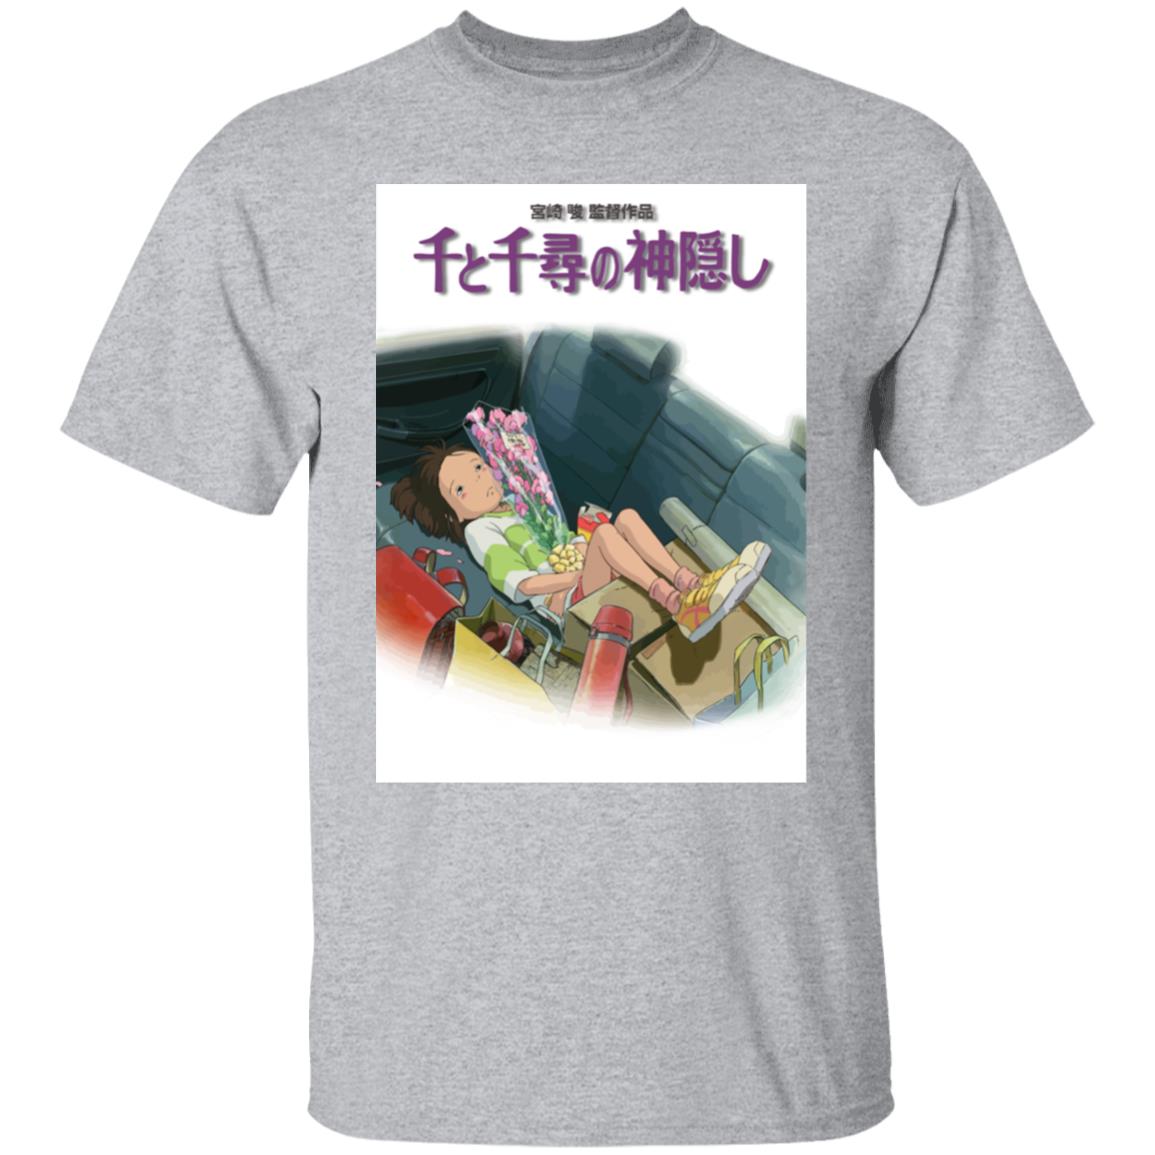 Spirited Away – Chihiro on the Car T Shirt